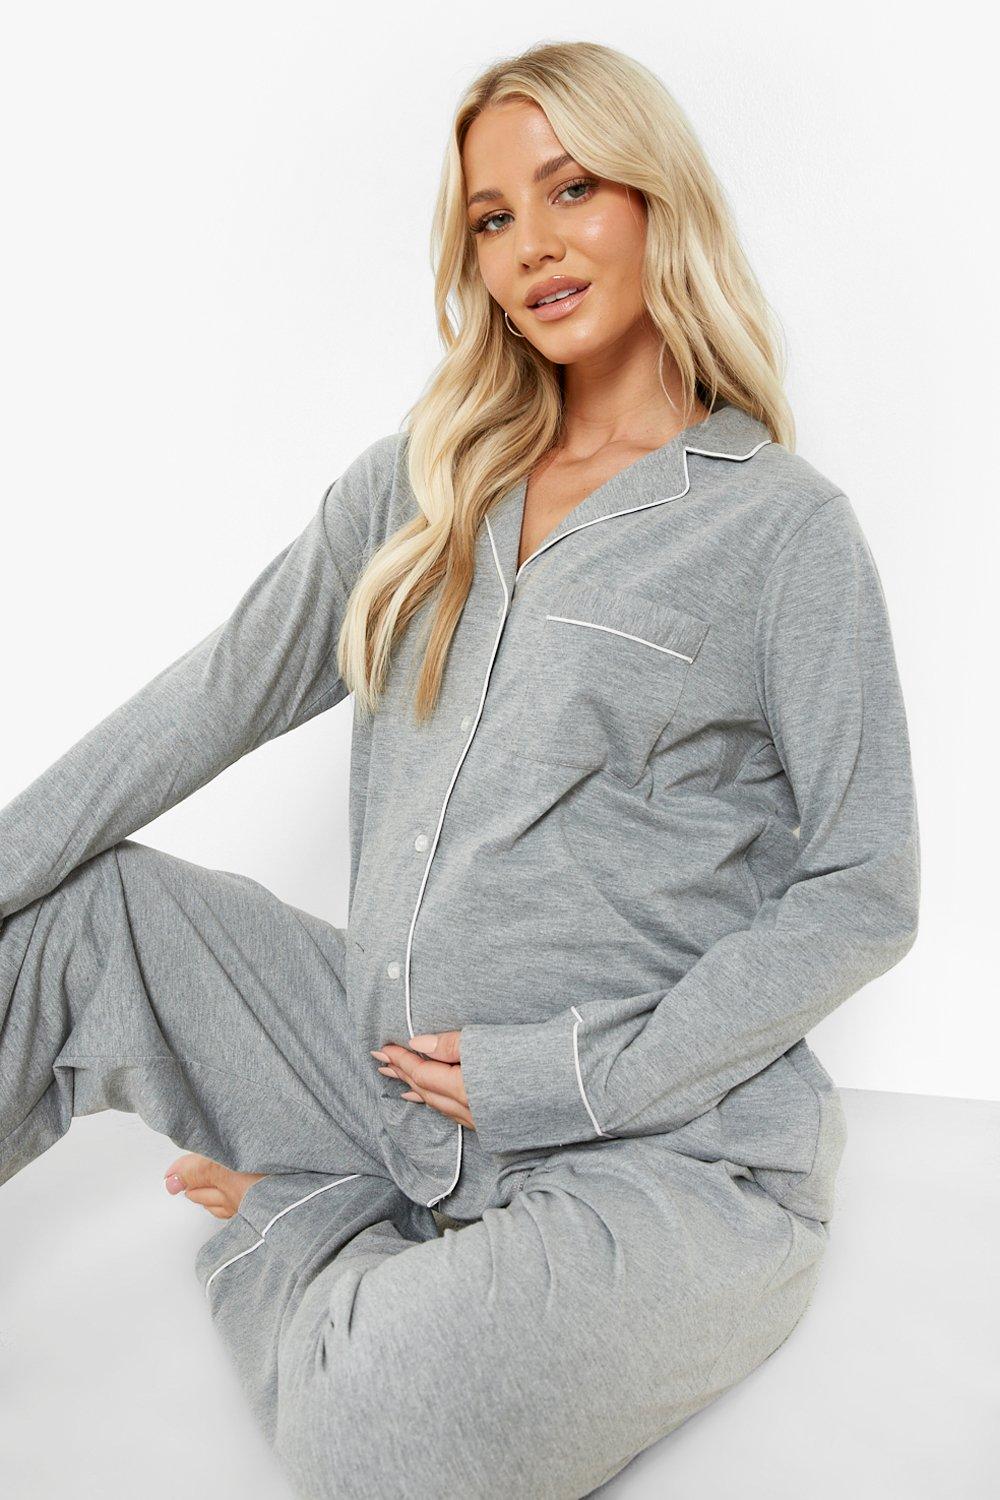 Maternité - Pyjama de grossesse en jersey